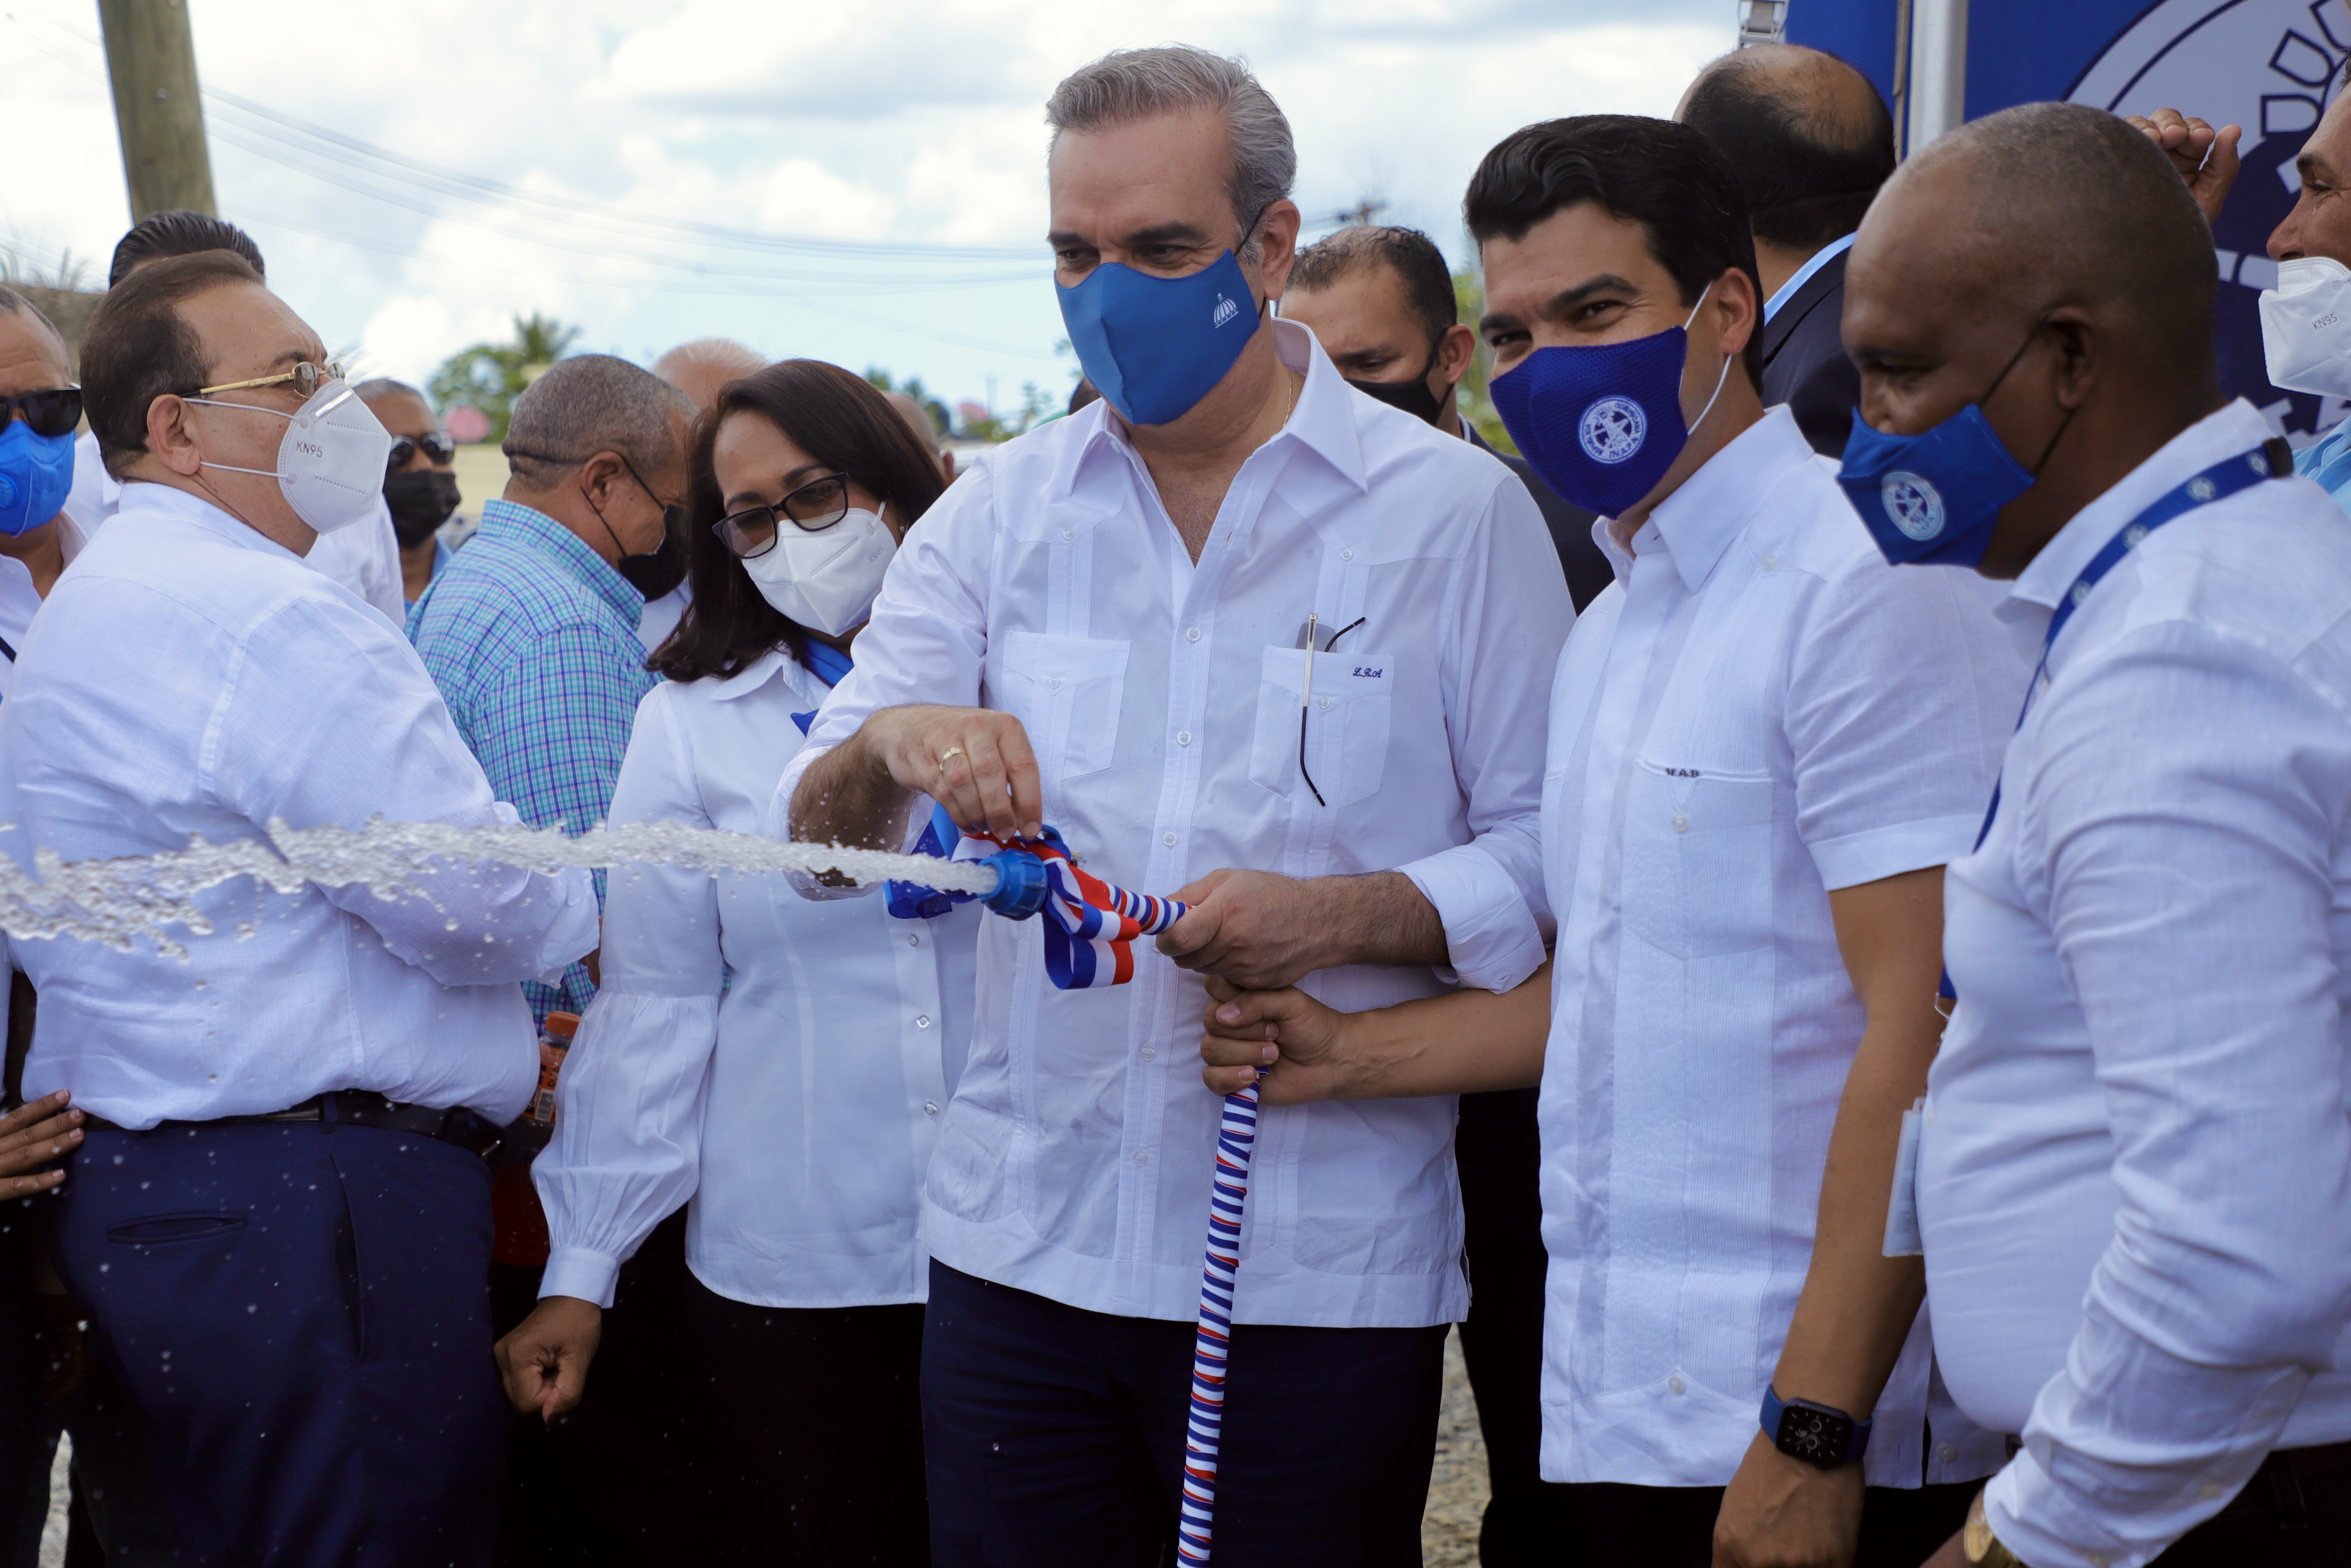 REPÚBLICA DOMINICANA: Presidente Abinader inaugura en Hato Mayor sistema de agua potable en beneficio de 6,500 comunitarios